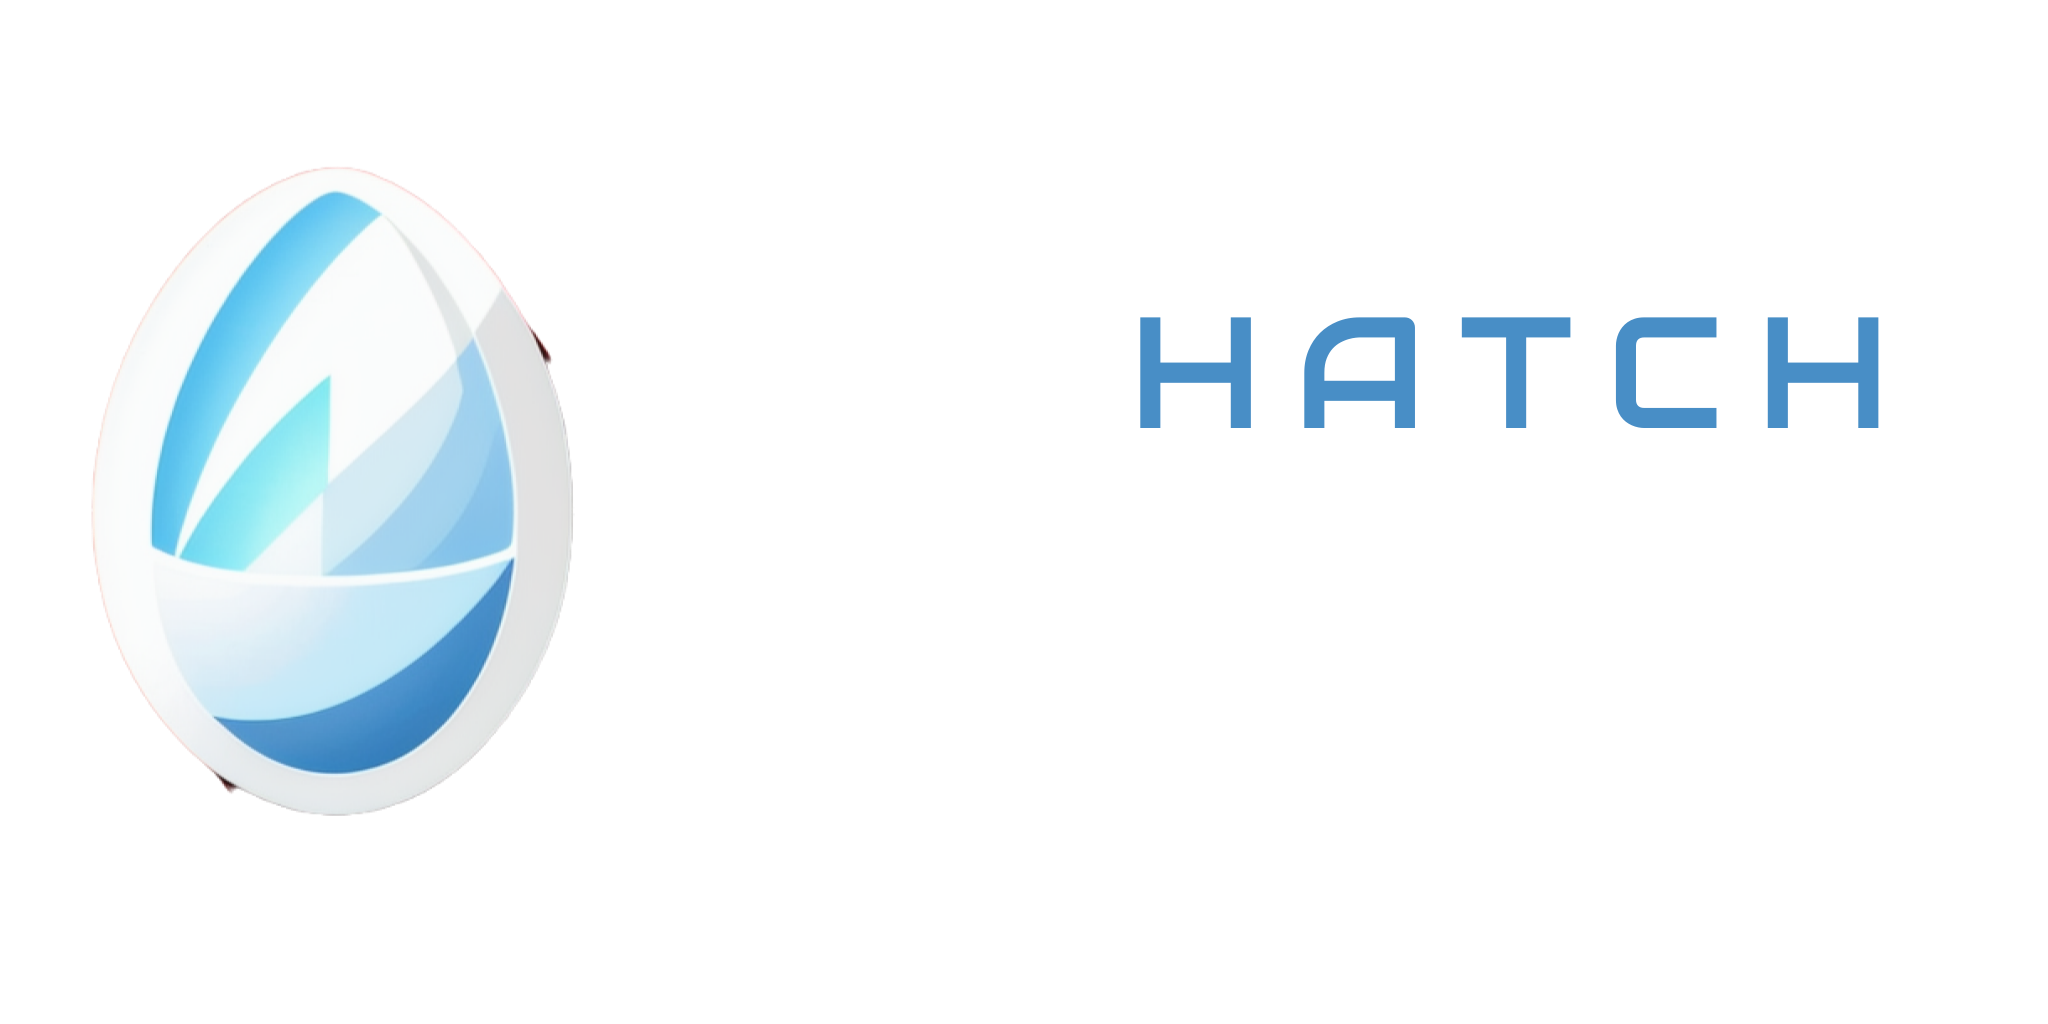 The Hatch Studios